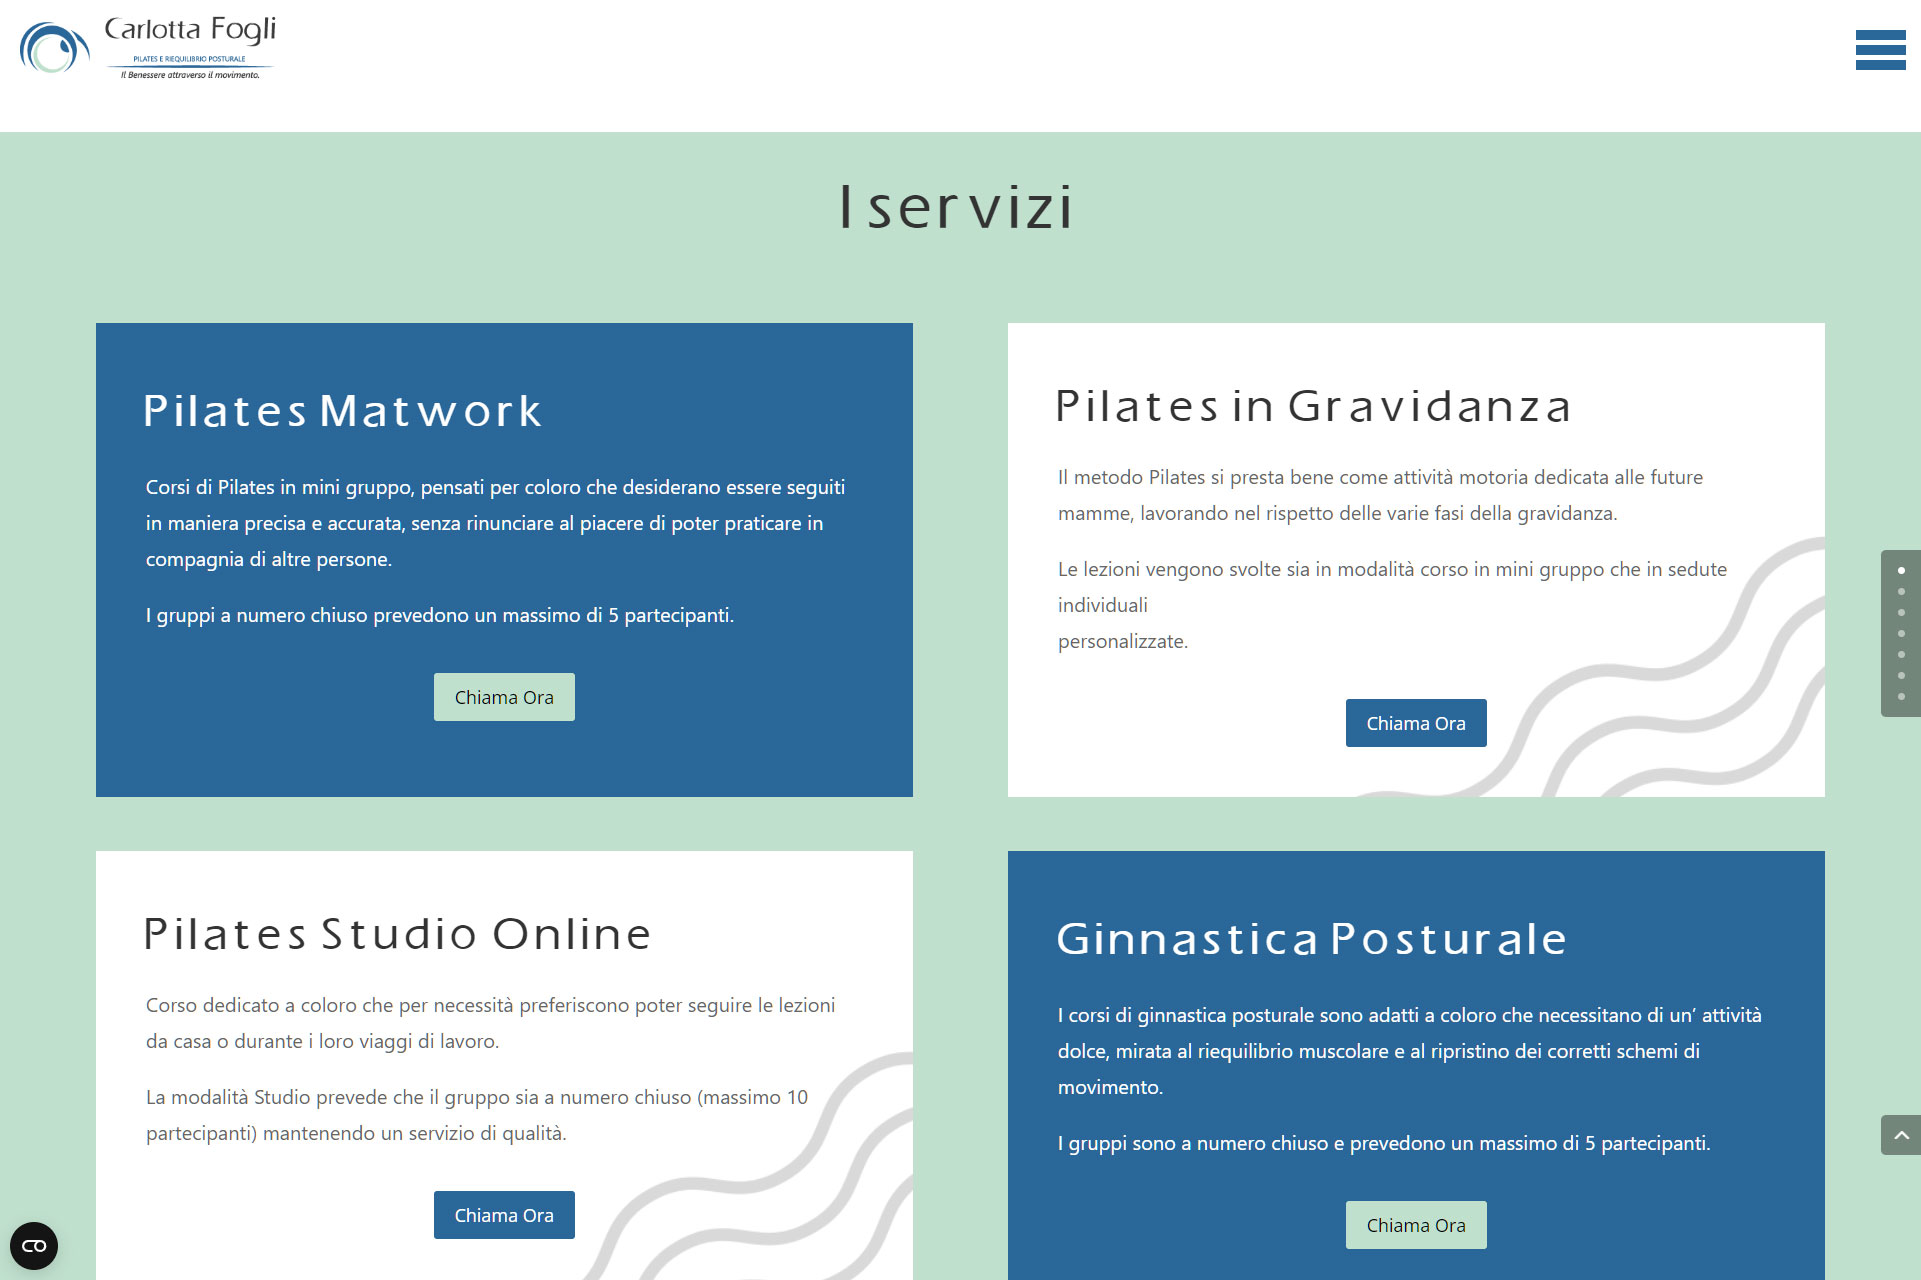 lv-design-realizzazione-siti-web-bologna-portfolio-carlotta-fogli-pilates-e-riequilibrio-posturale-slide-2